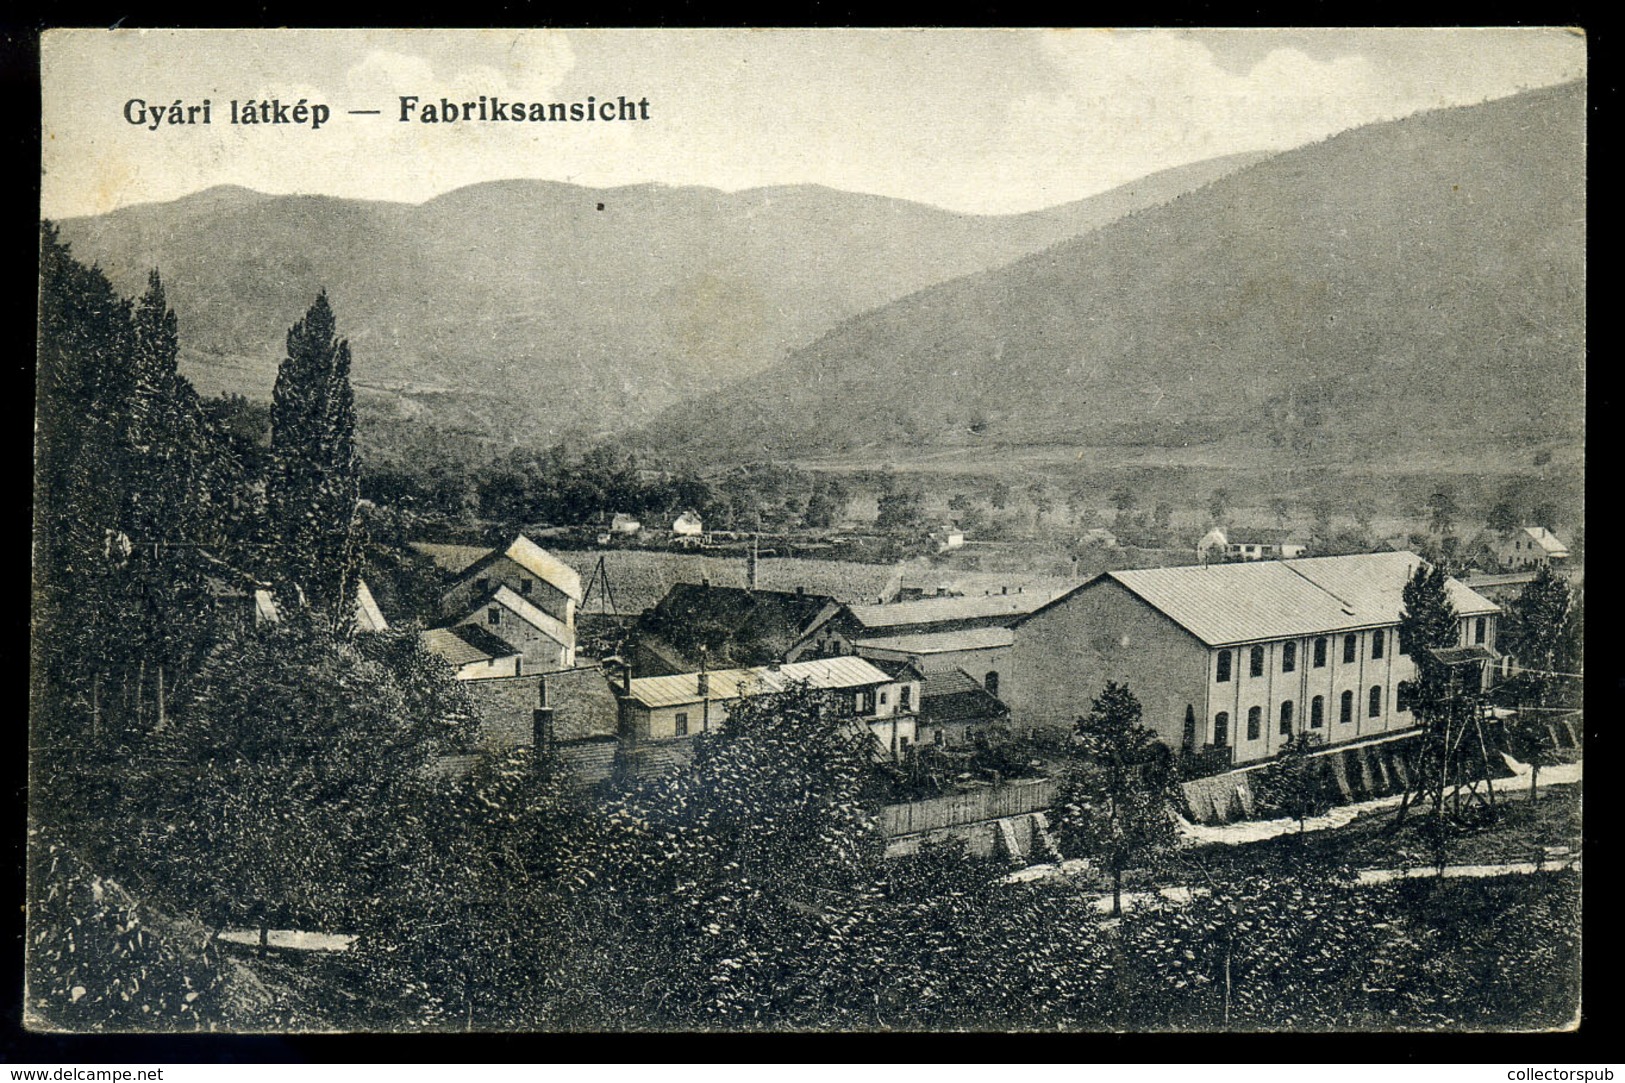 CSERNAHÉVÍZ / Topleț  Schramm Gépgyár, Régi Képeslap  /  Machine Shop  Vintage Pic. P.card - Romania